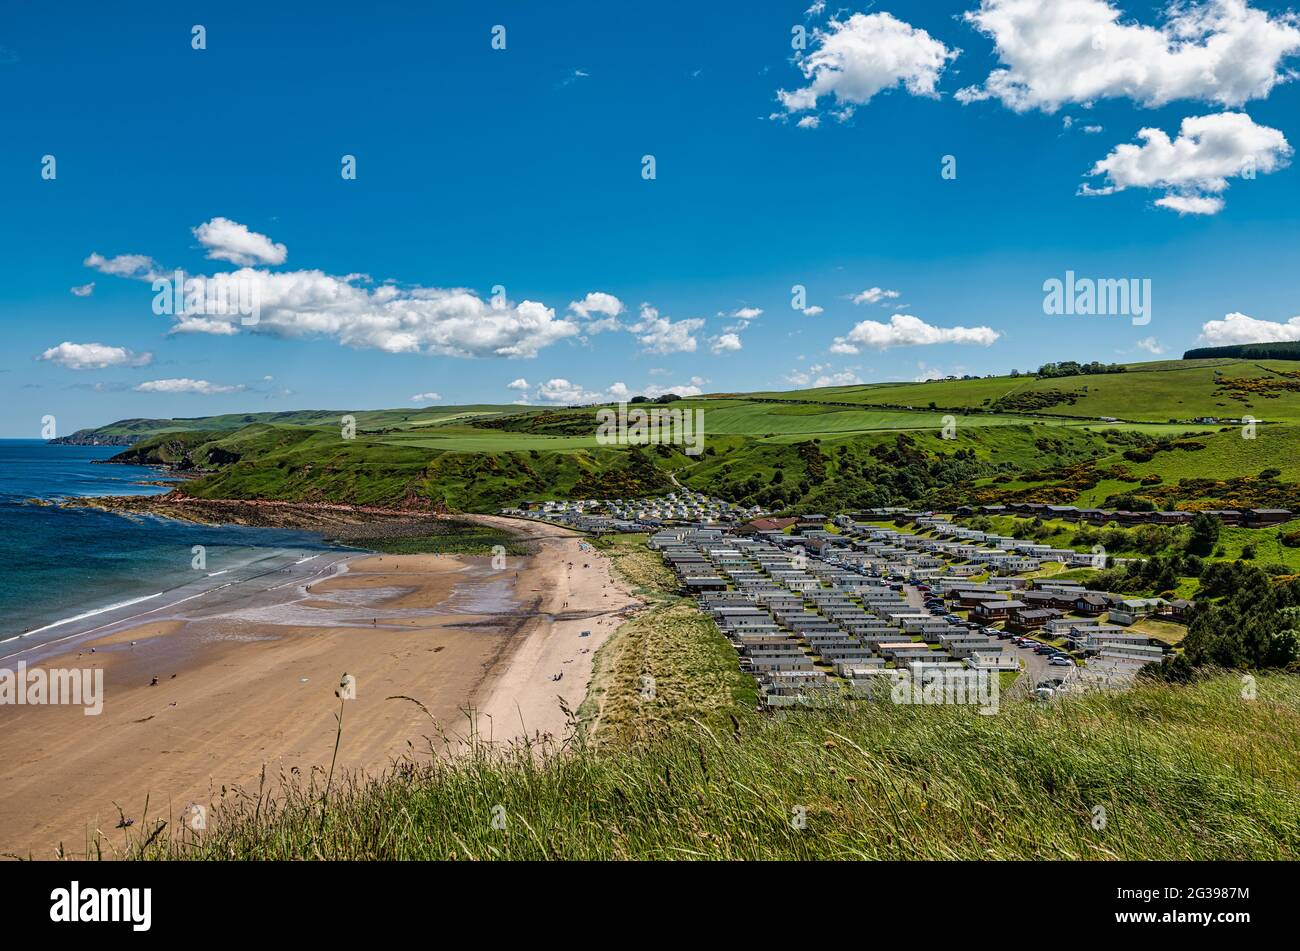 Vista del parque de vacaciones Pease Bay con casas móviles en el soleado día de verano, Berwickshire, Scottish Borders, Escocia, Reino Unido Foto de stock